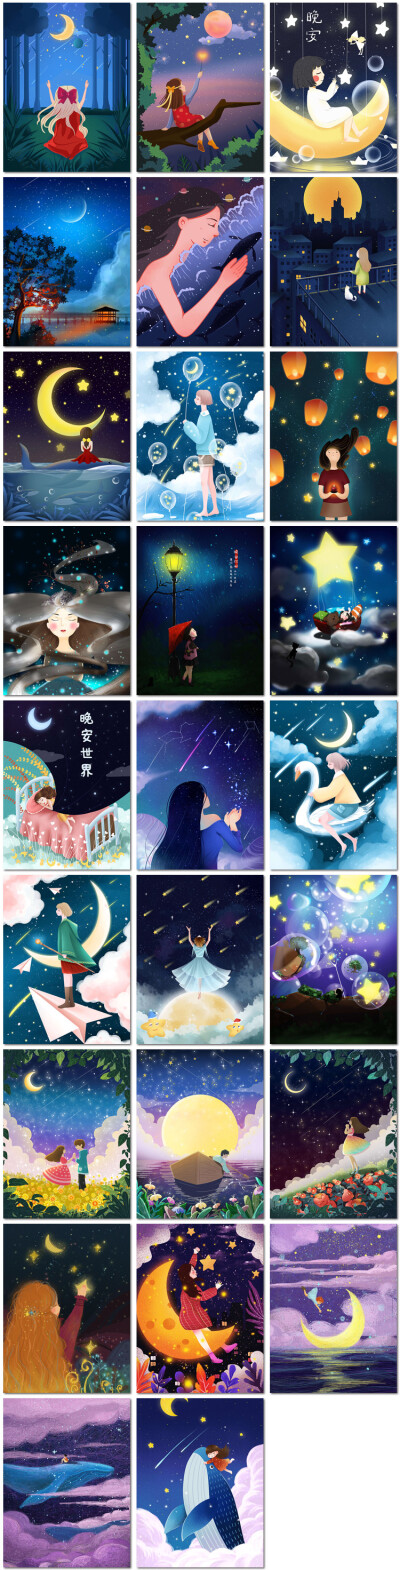 夜晚夜空星空星星月亮唯美治愈童话梦幻海报psd插画模板素材设计